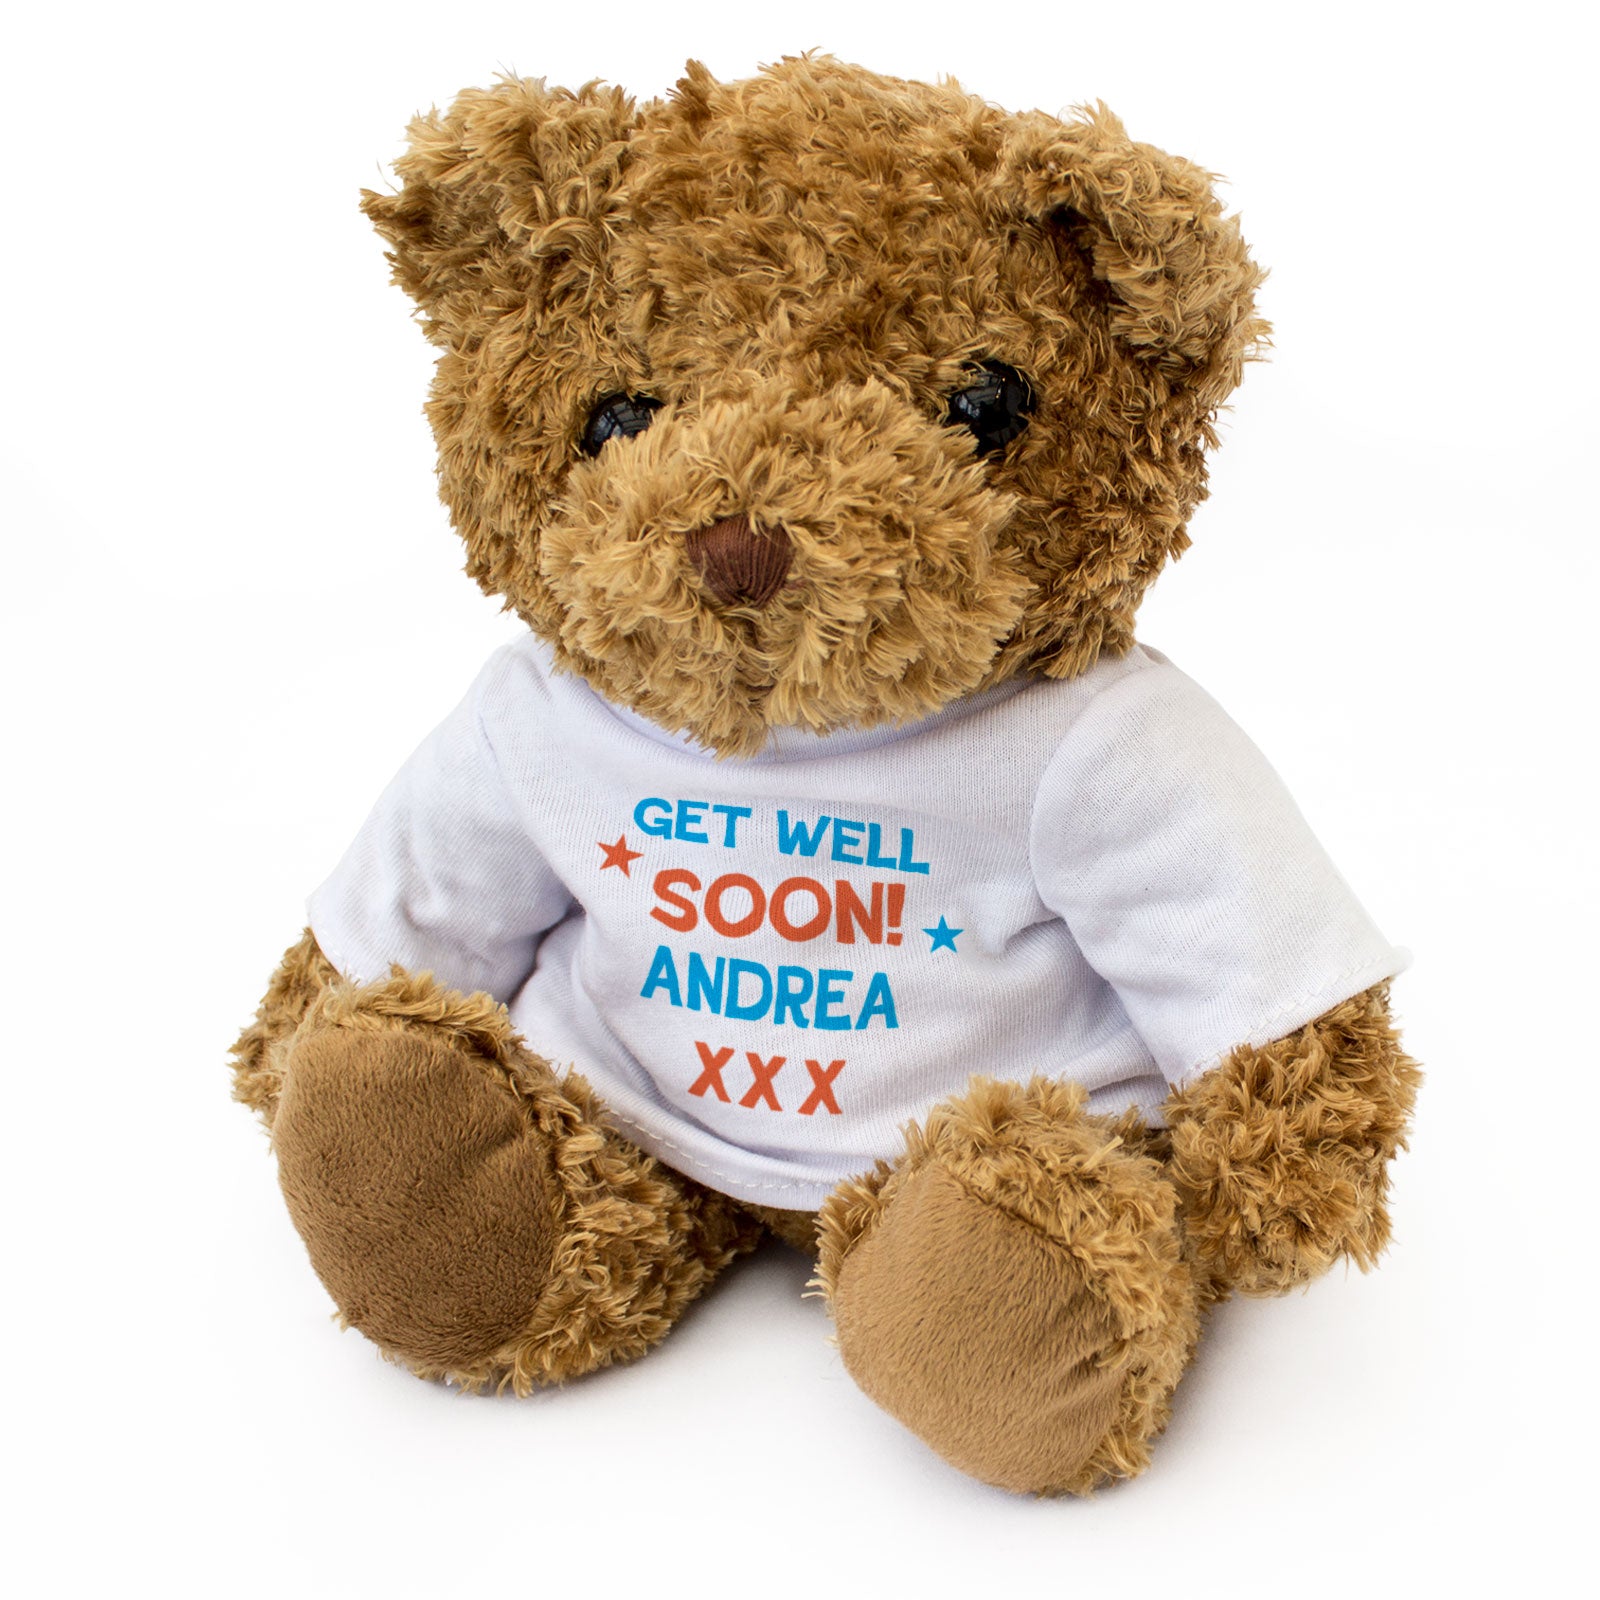 Get Well Soon Andrea - Teddy Bear